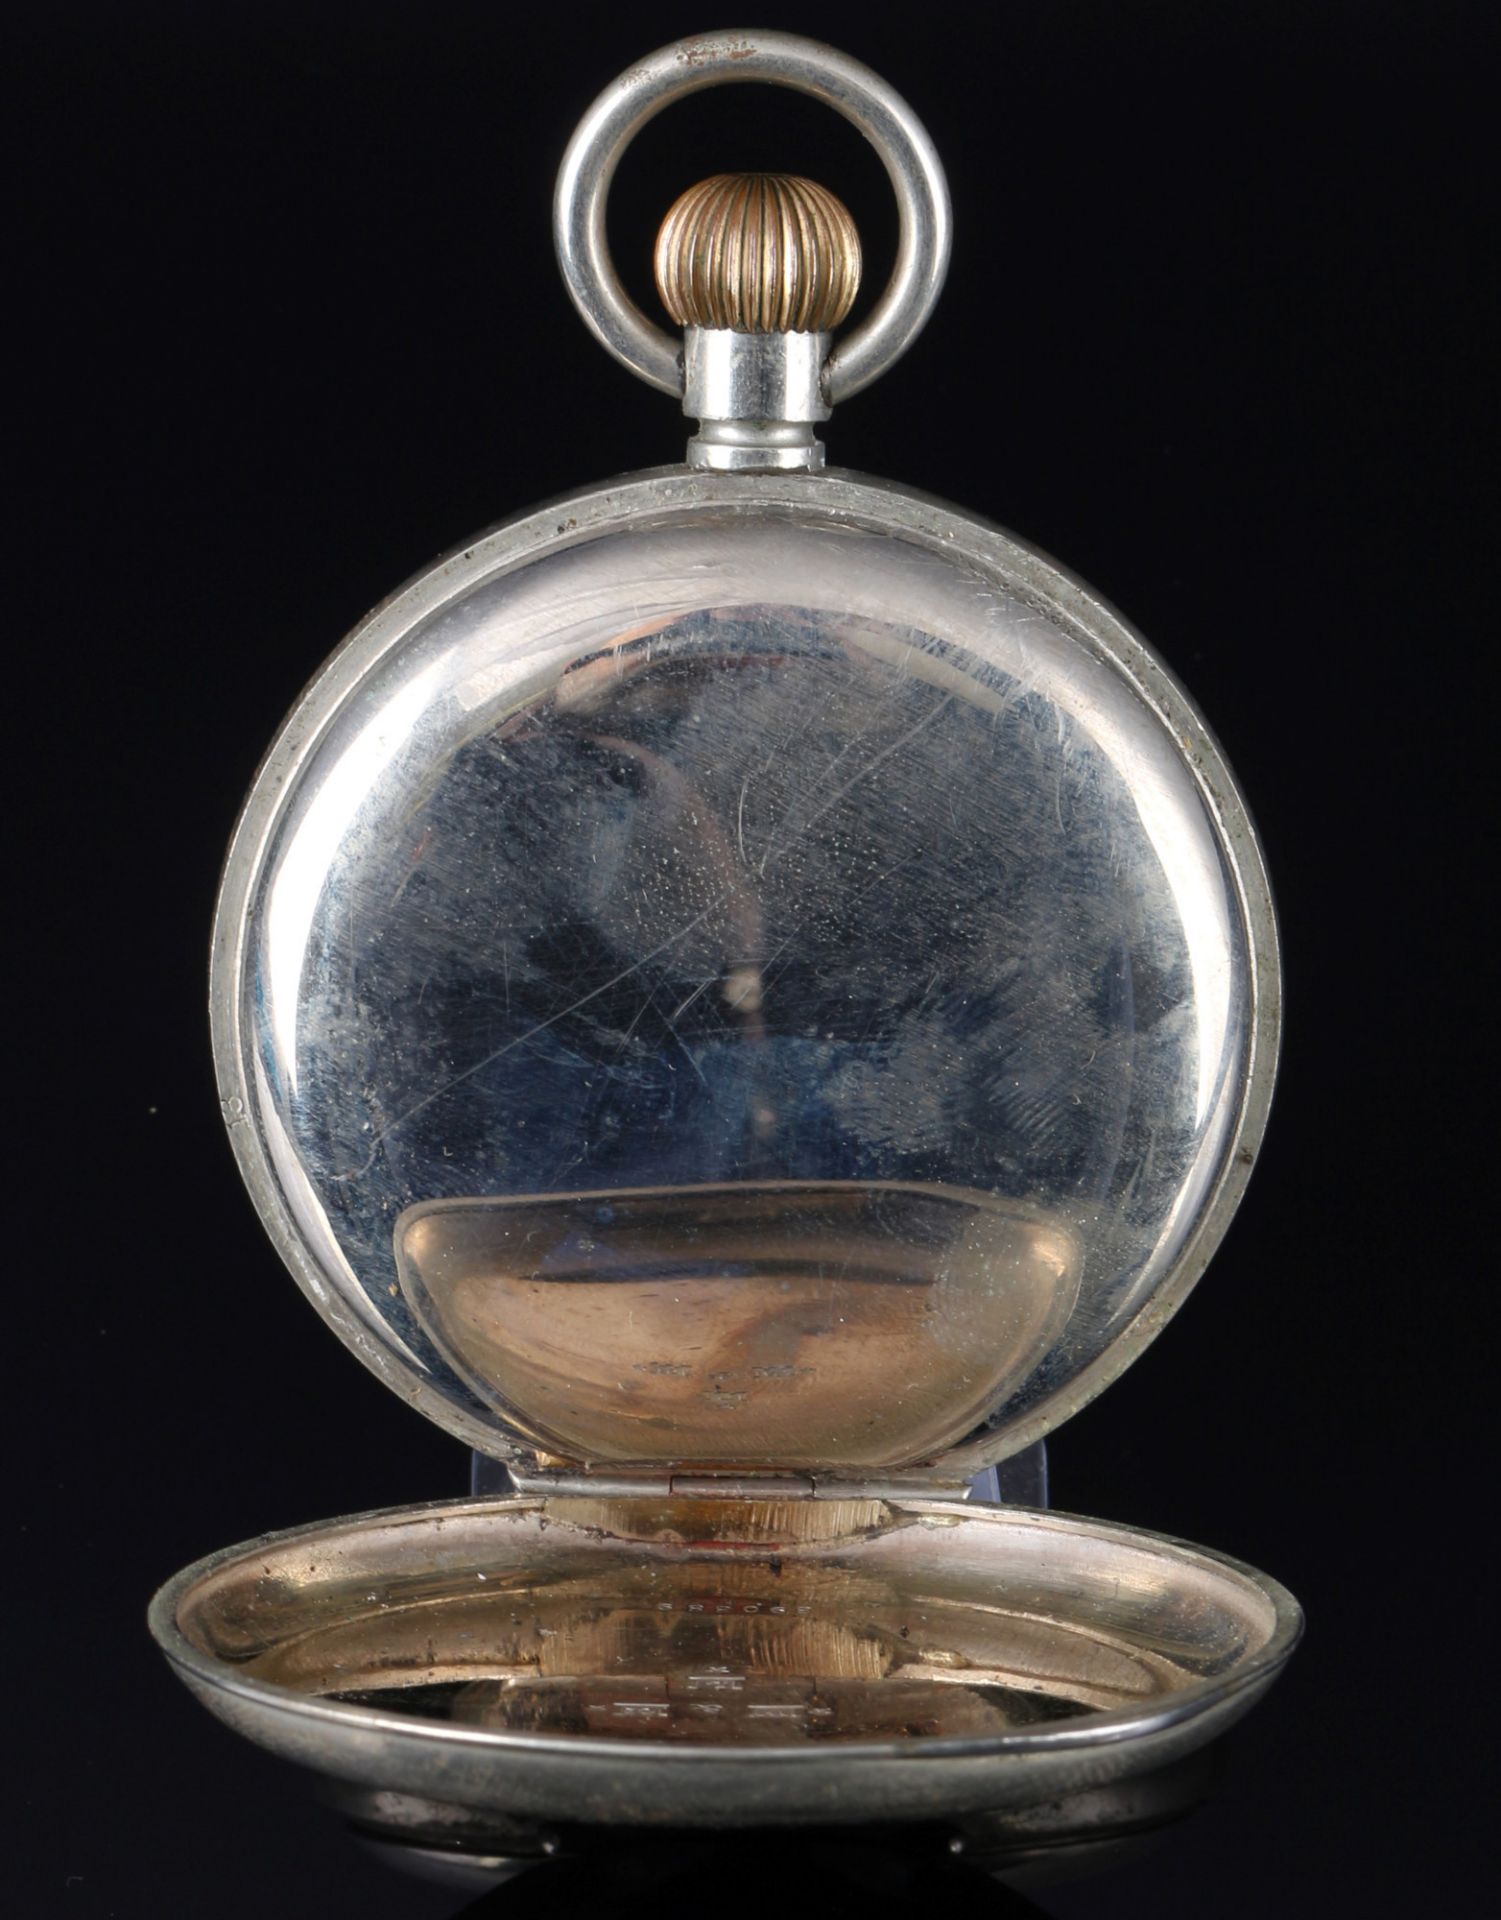 Brevet Taschenuhr als Reiseuhr in 925 Sterling Silbergehäuse um 1900, - Bild 4 aus 8